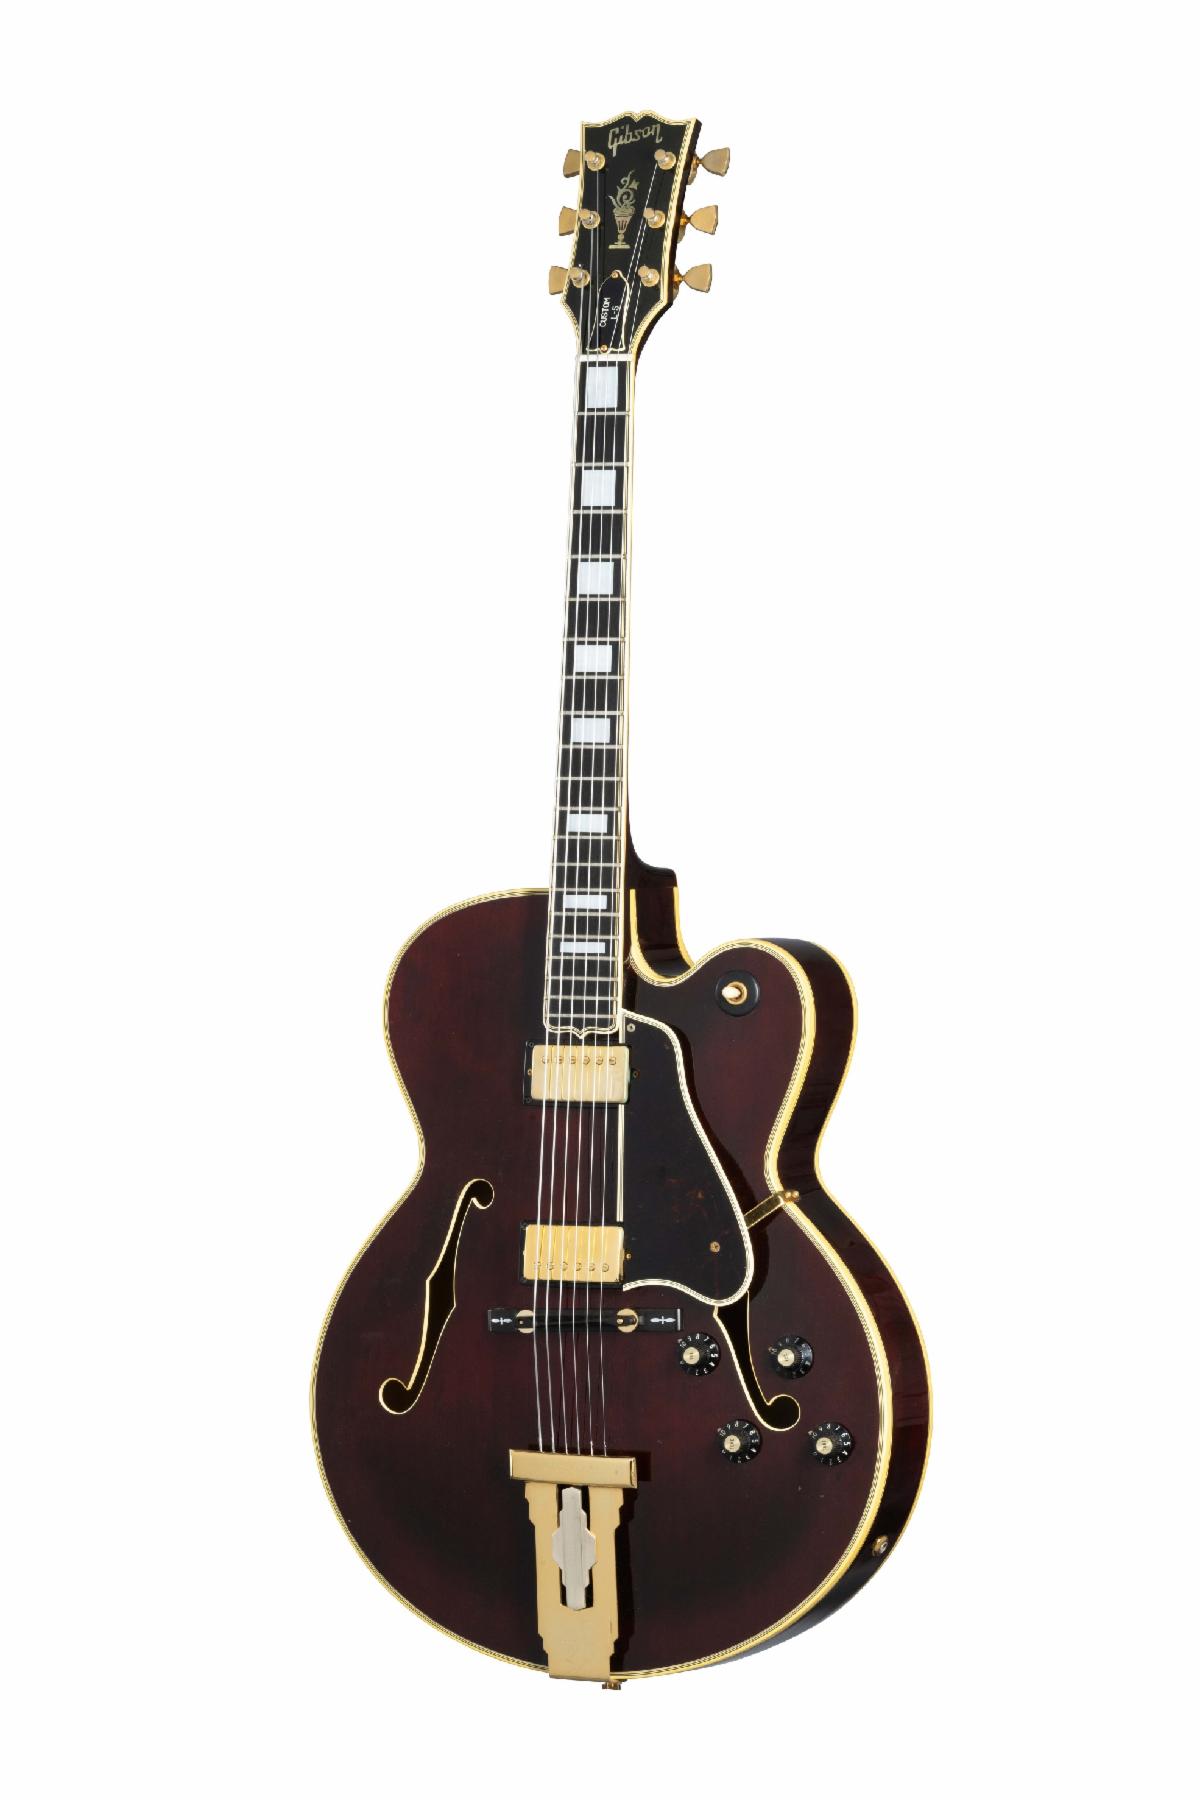 The 1978 Gibson Custom L-5 CES.